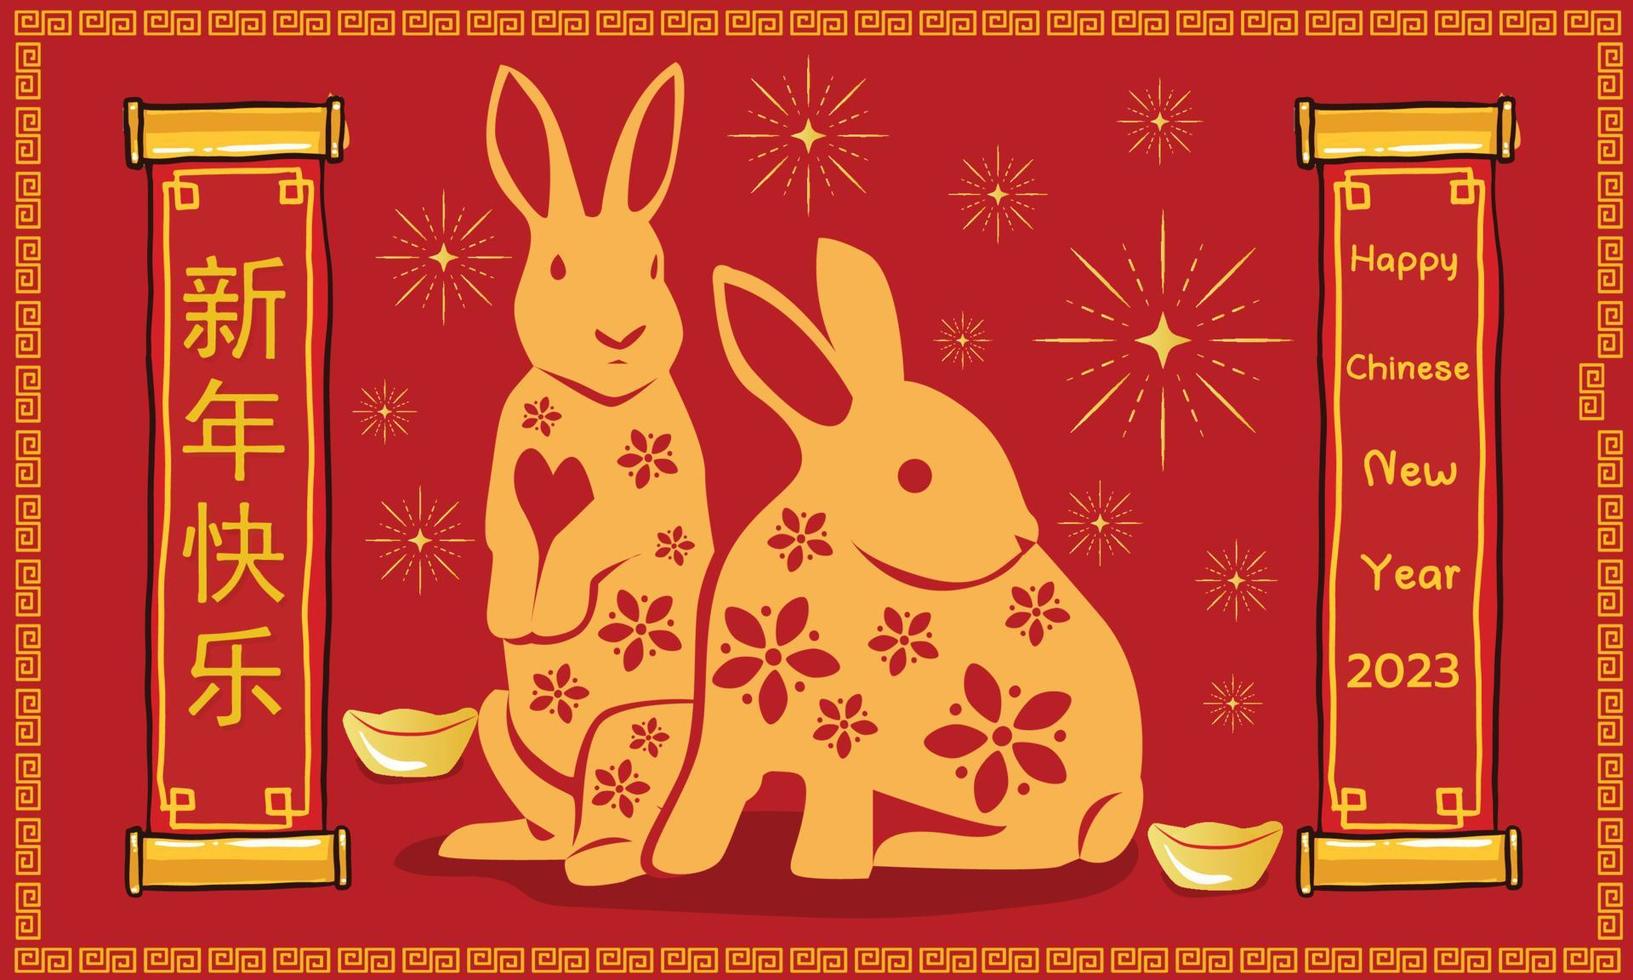 frohes chinesisches neujahr 2023, jahr des kaninchens, frohes neues jahr illustration für plakate, karten, kalender, schilder, banner, website, öffentlichkeitsarbeit und andere designs vektor